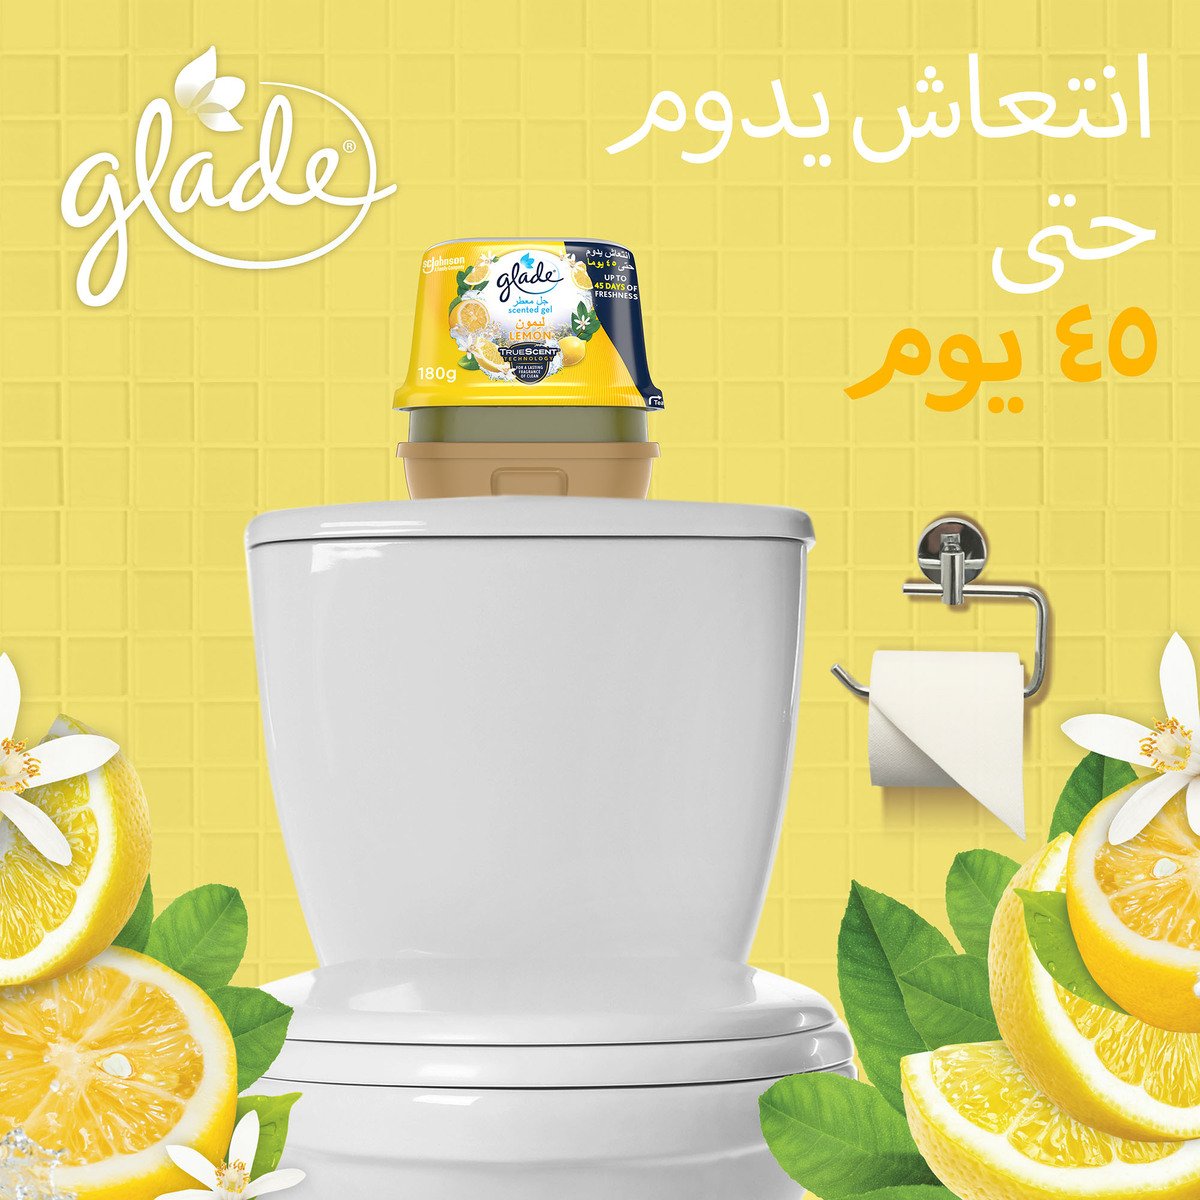 Glade Scented Gel Lemon 180 g